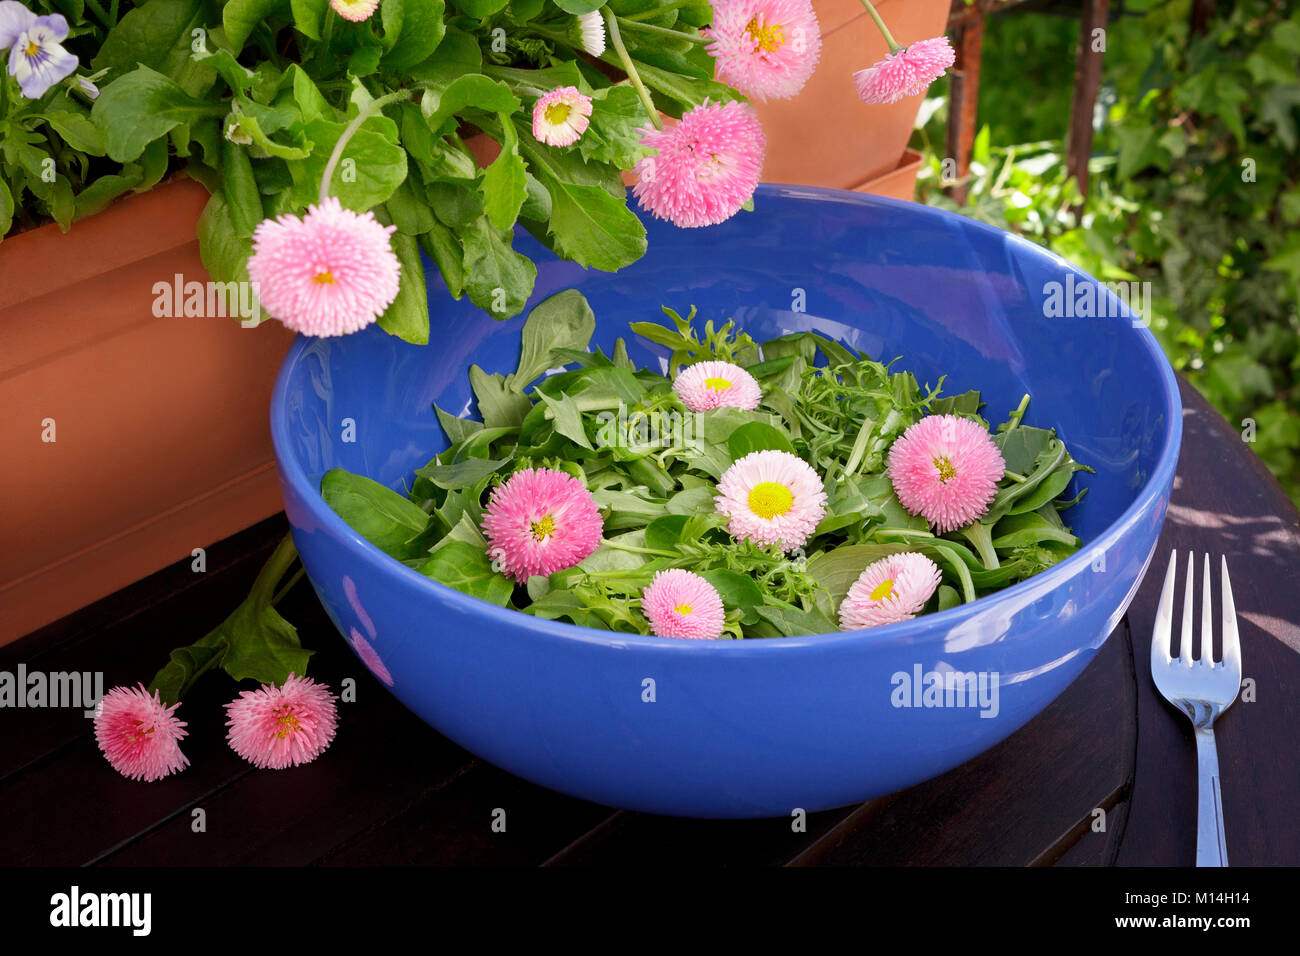 Blue insalatiera con un misto di verde le foglie di lattuga e commestibile rosa fiori a margherita al buio su un tavolo di legno all'aperto, daisy piante in una pentola in background Foto Stock